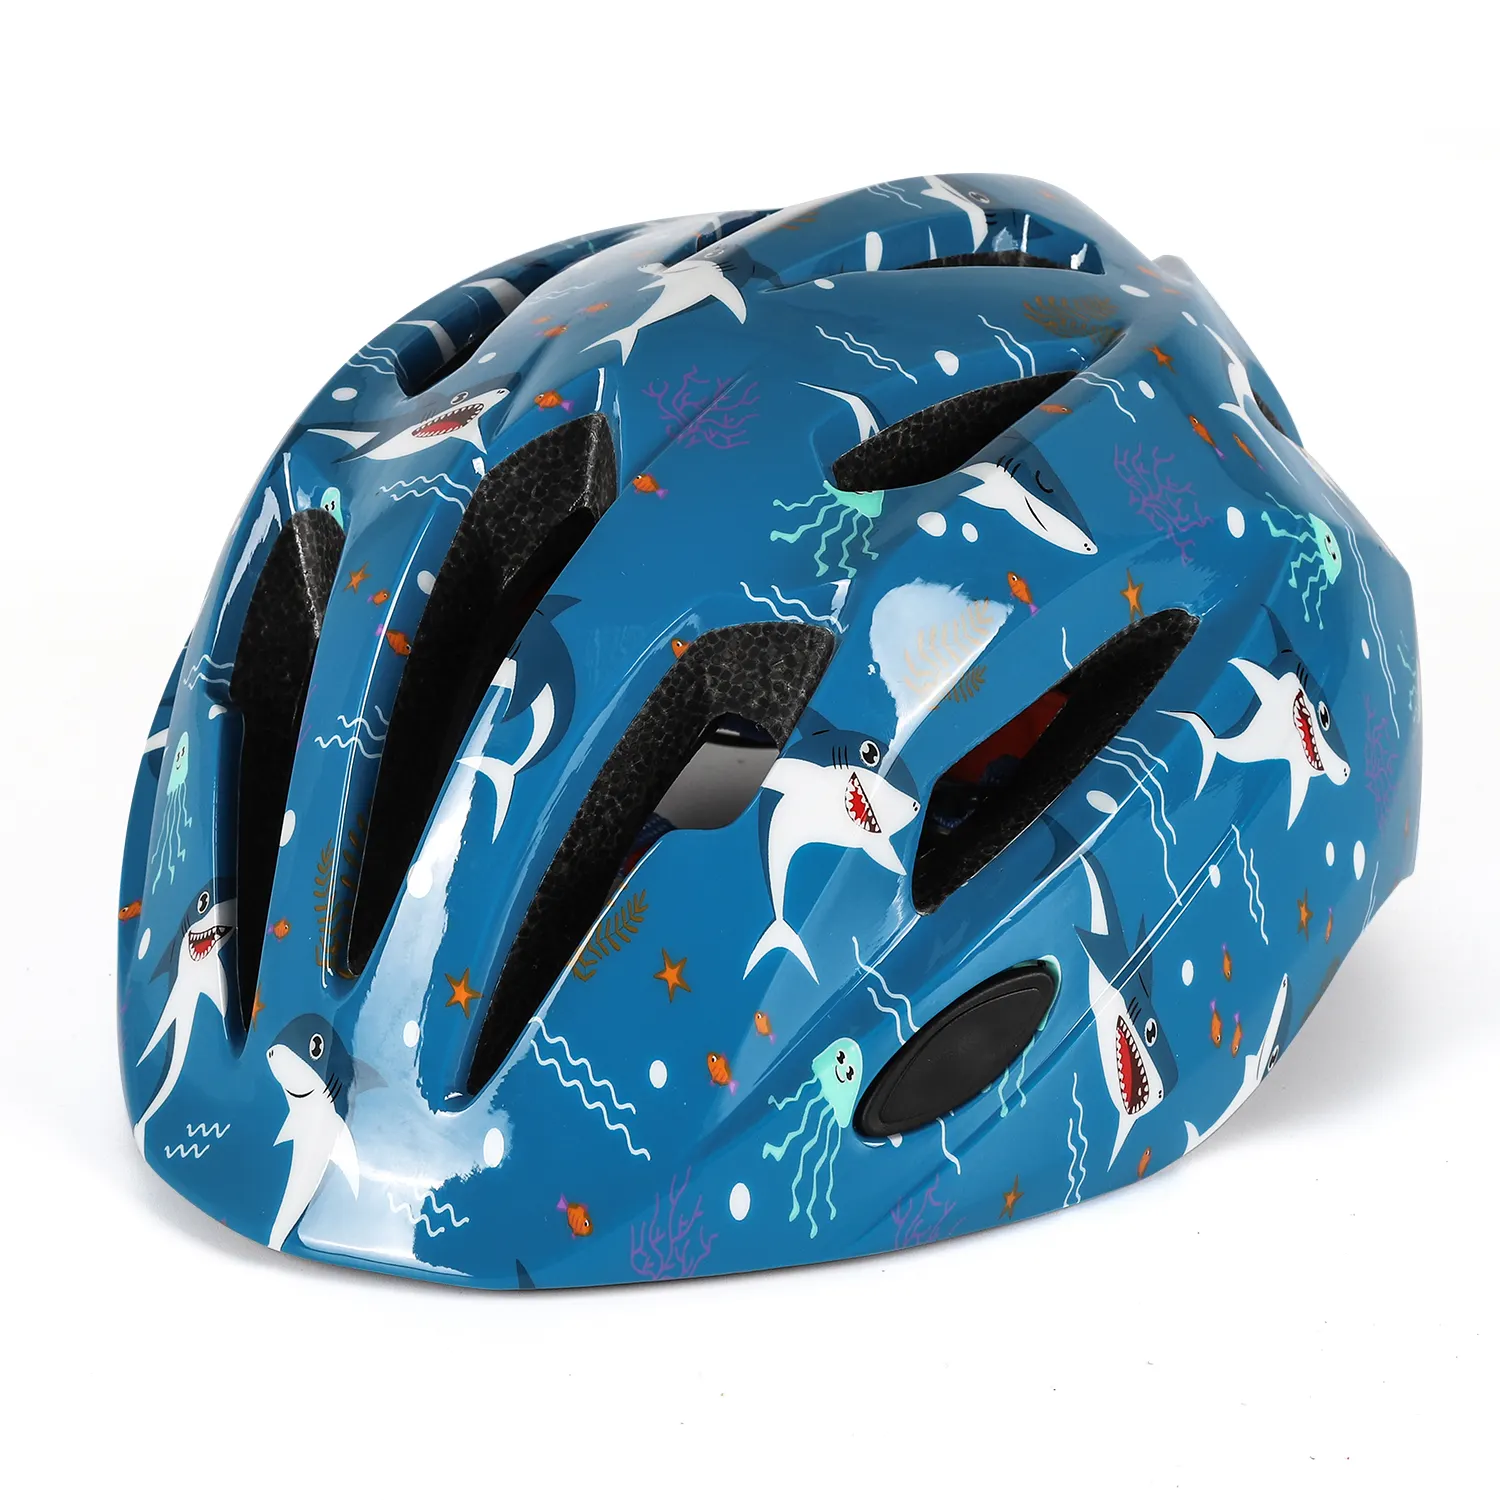 最新のキッズサイクリングヘルメット調節可能なスポーツバイクヘルメットスケートボードスクーター保護安全キッド自転車ヘルメット